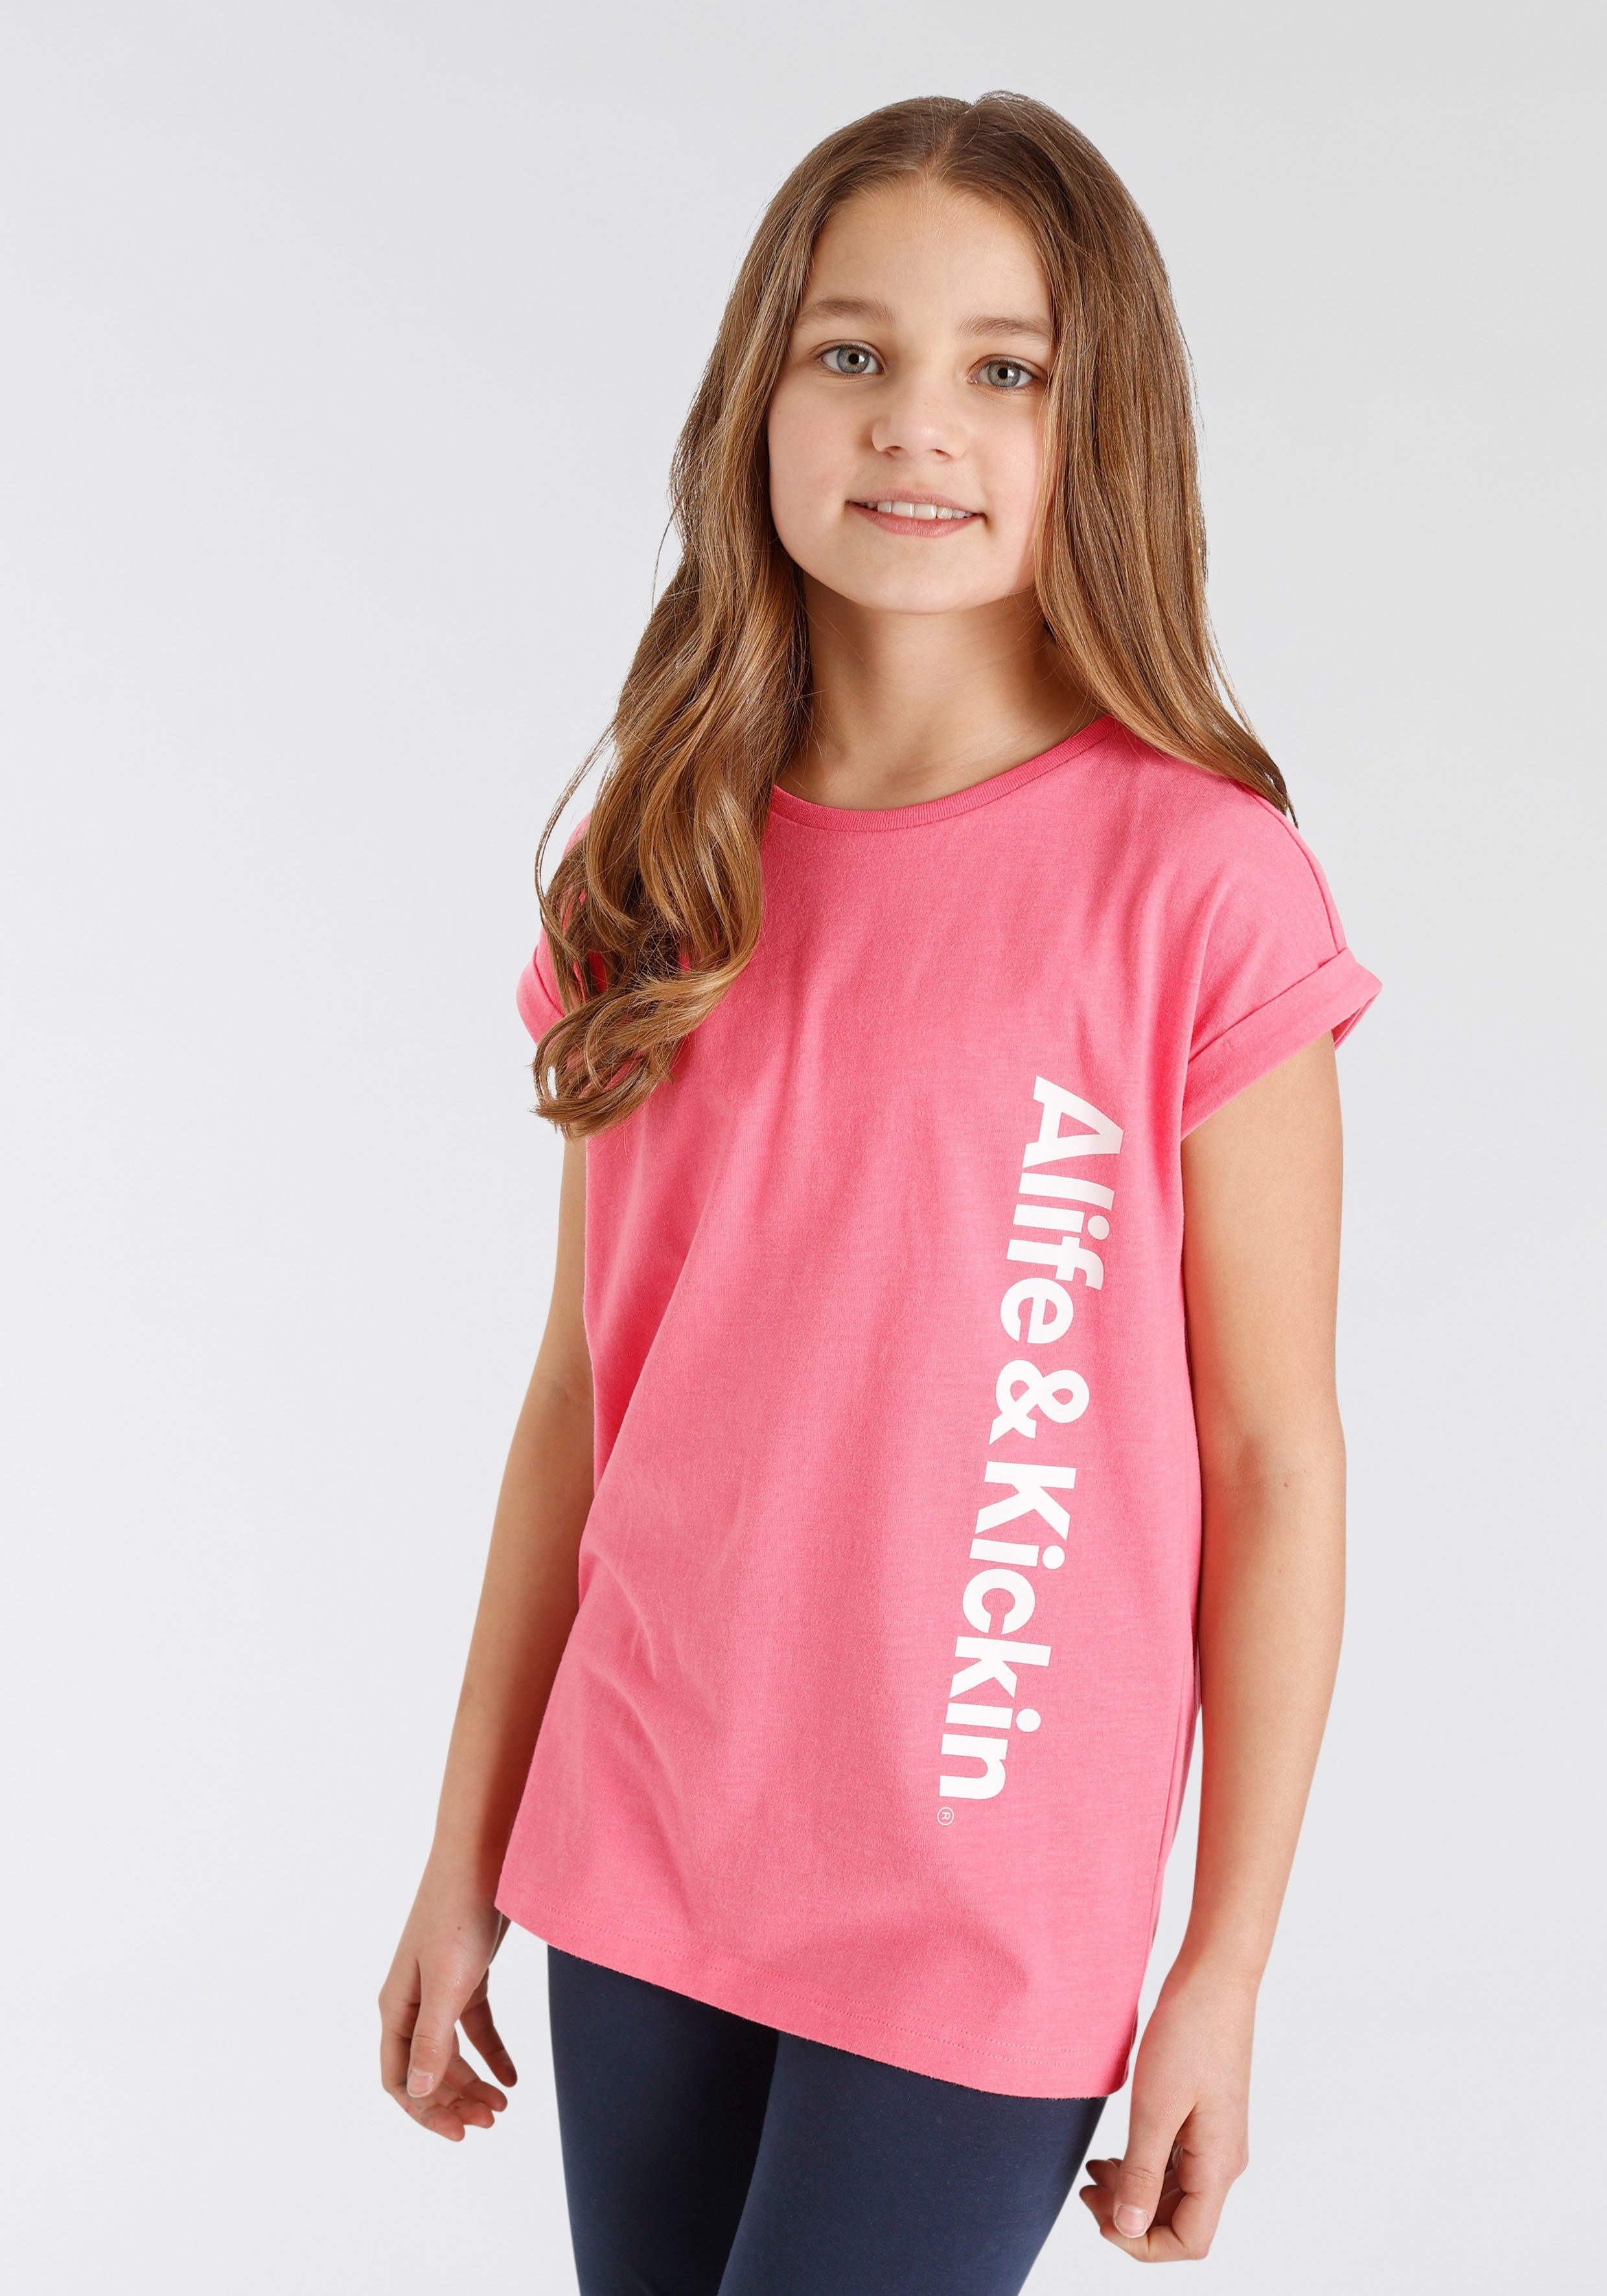 & für Alife Druck T-Shirt Kickin Kids. NEUE Logo Kickin Alife & mit MARKE!